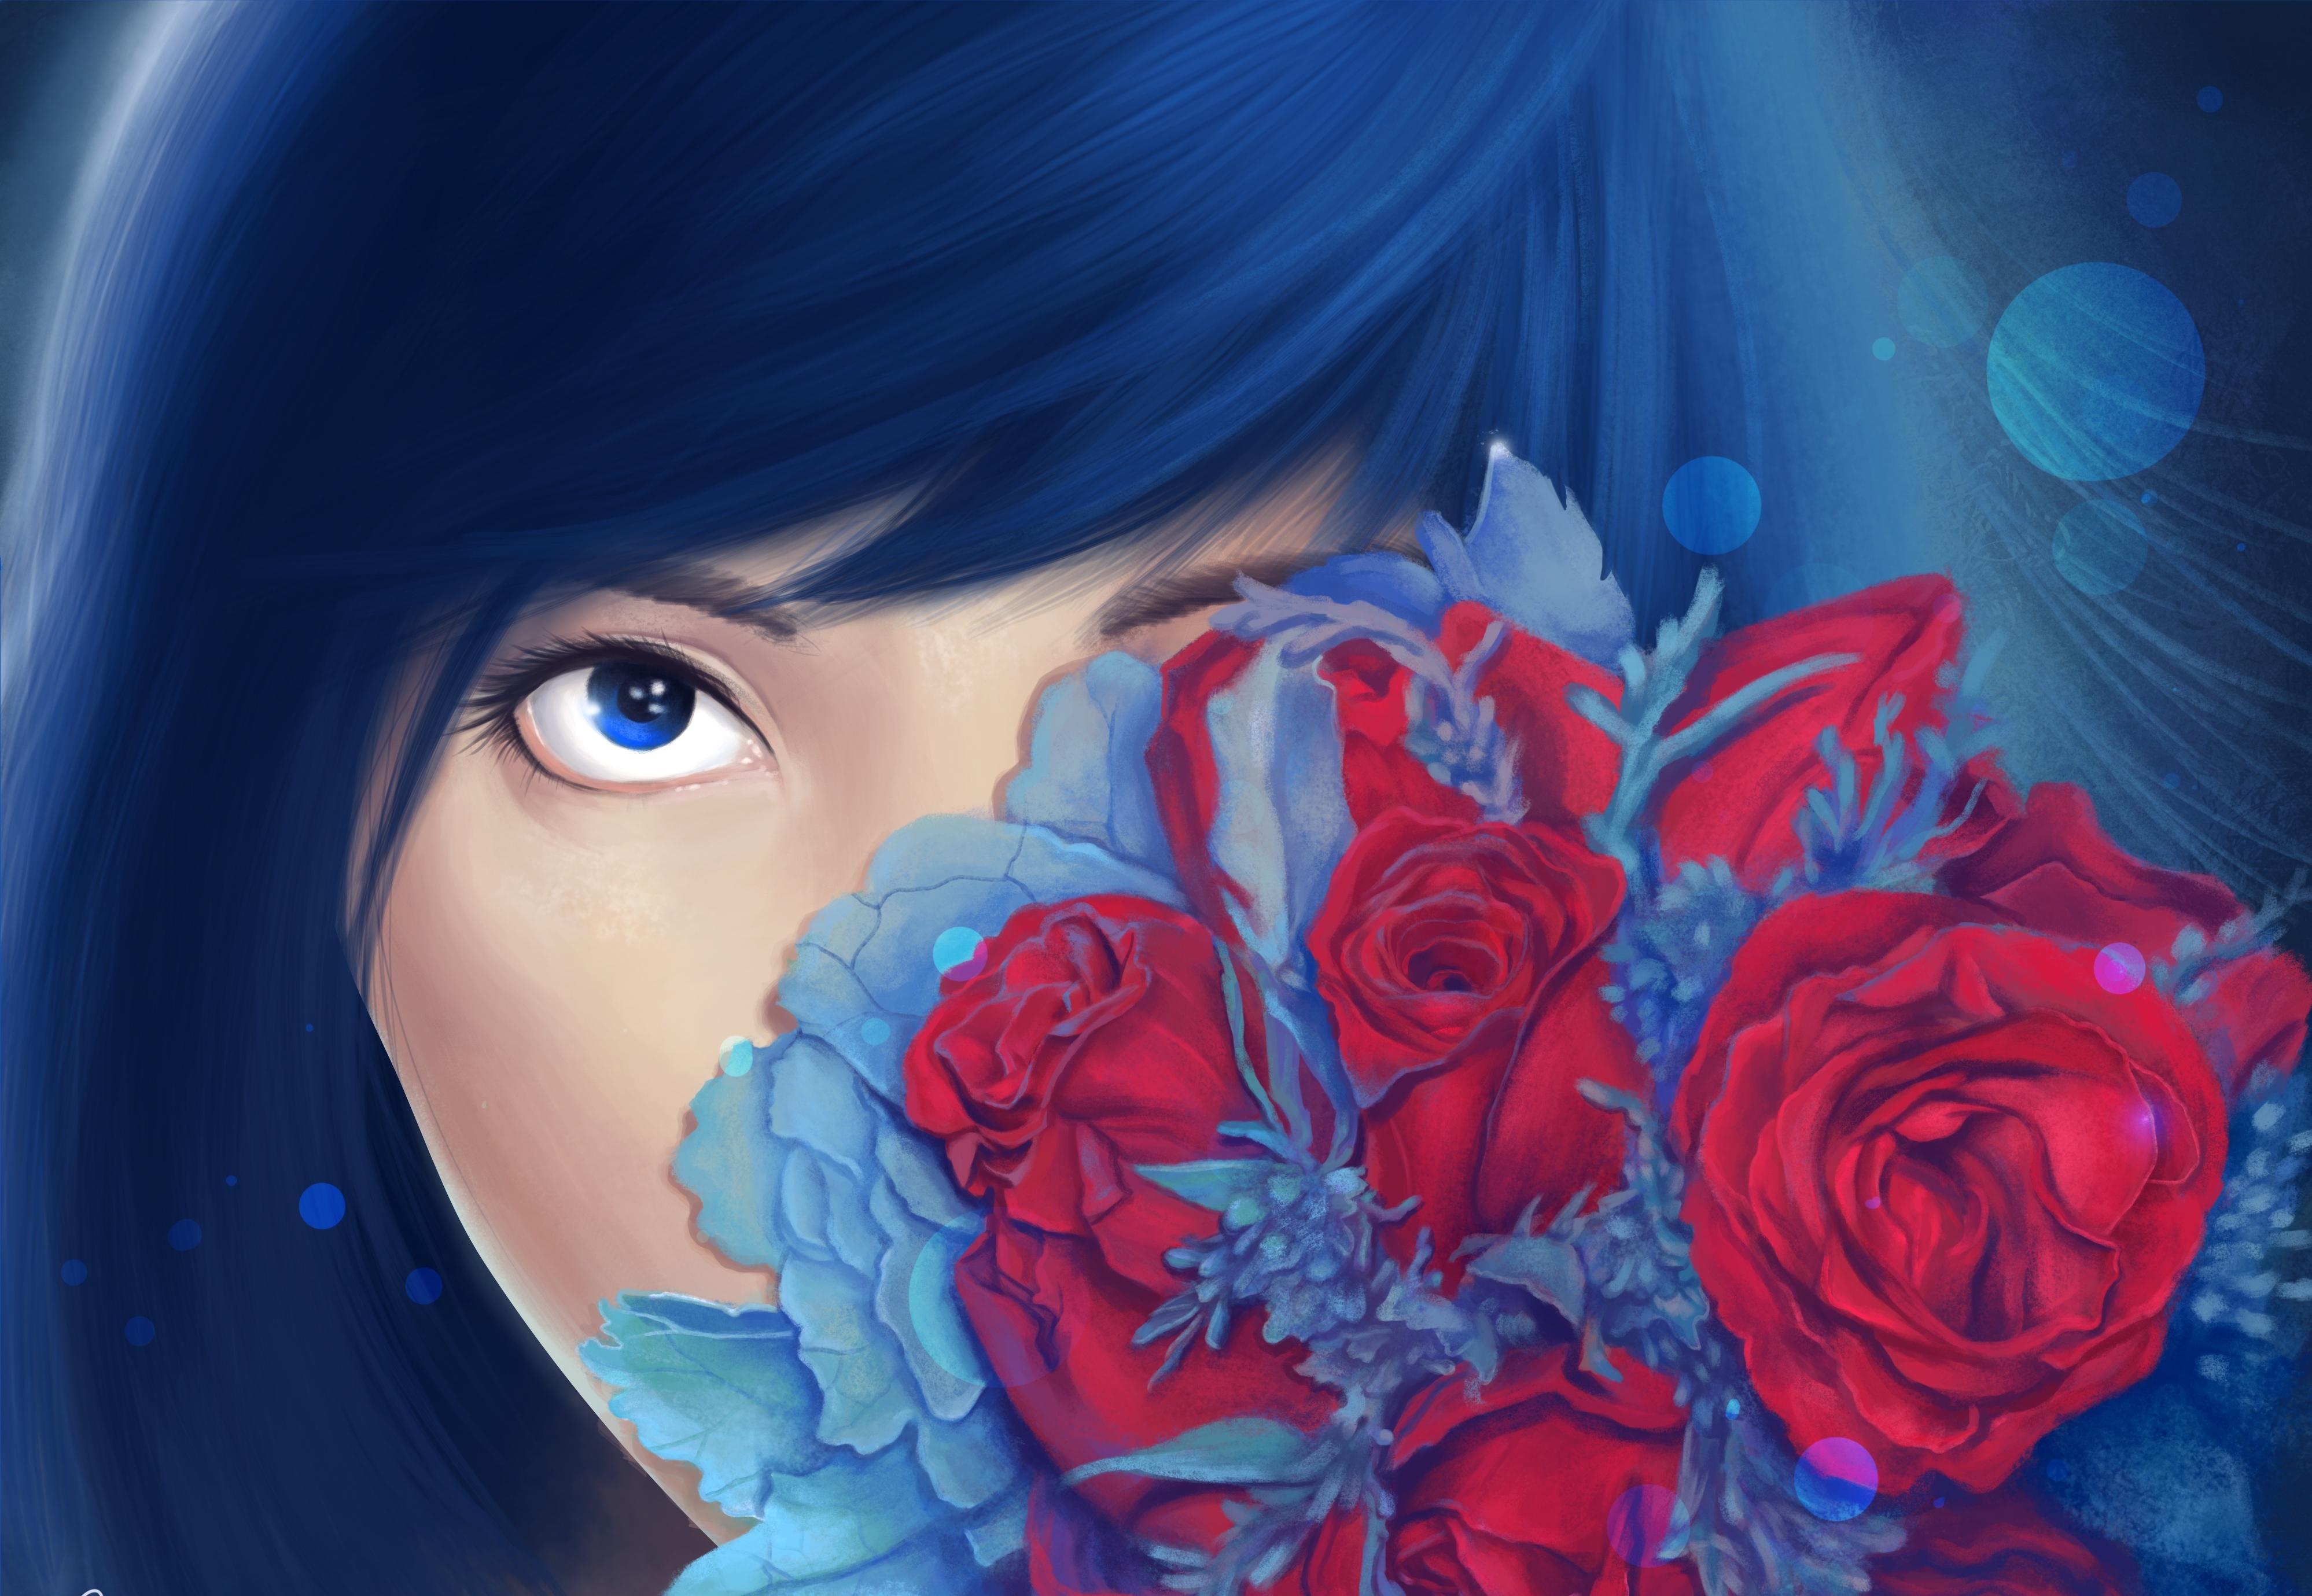 Аватарки цветочки. Девушка цветок арт. Портрет в синем цвете. Красивые арты. Девушка в цветах арт.